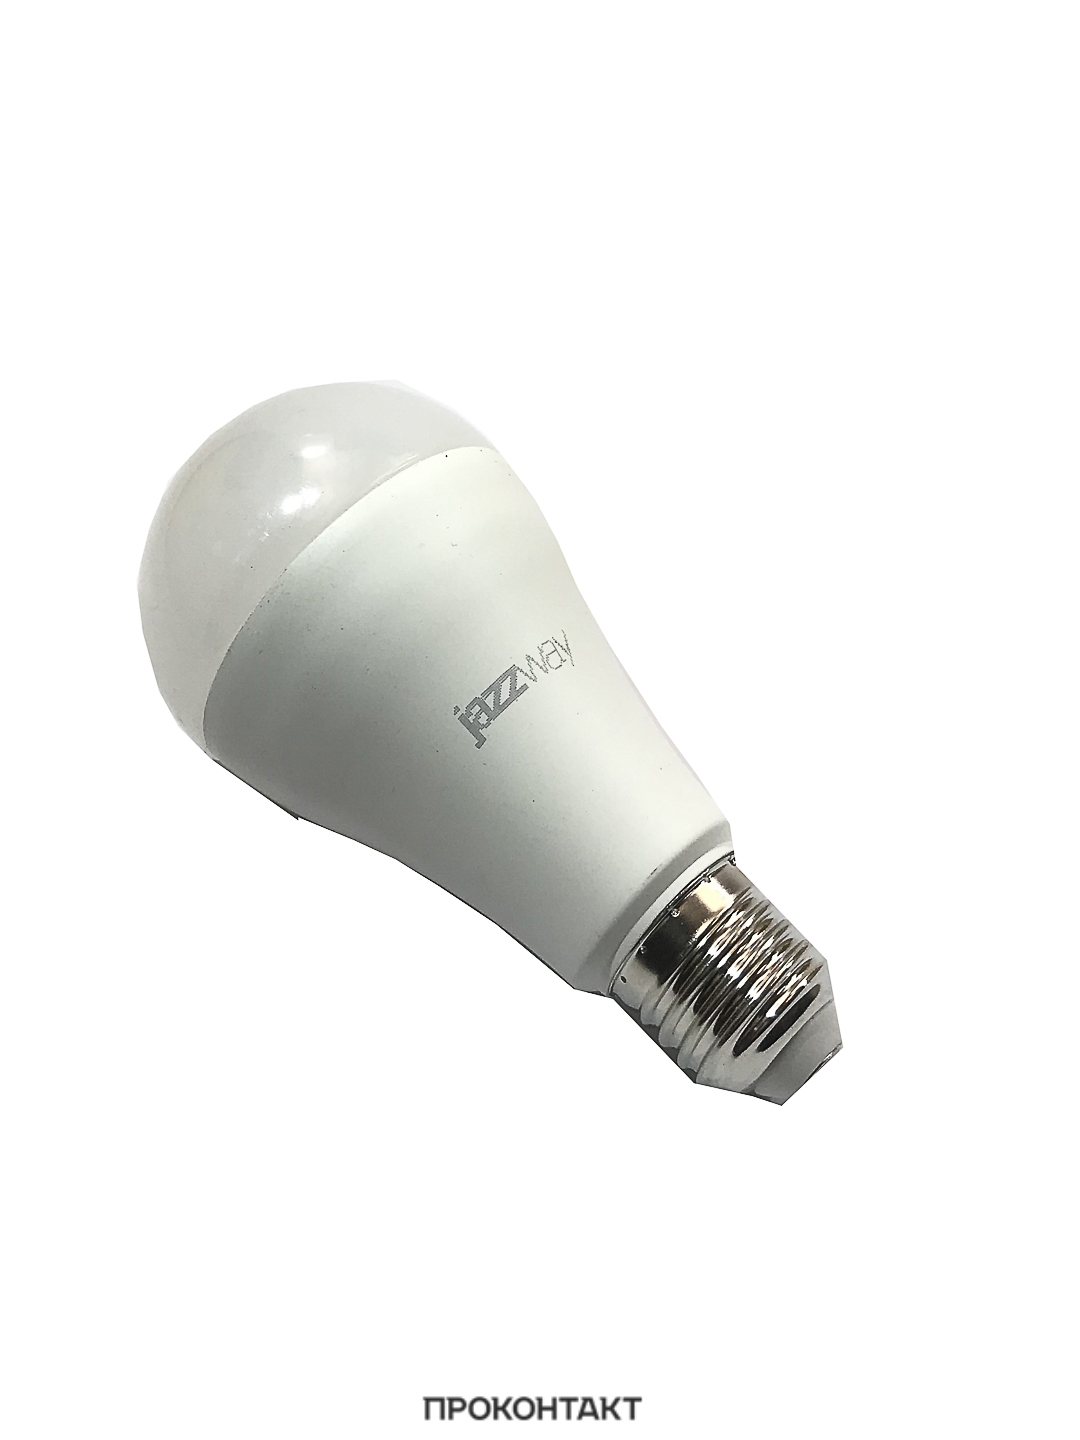 Купить Лампа светодиодная 20 Вт 230В Е27 колба А65, термопластик, белый цвет в Челябинске